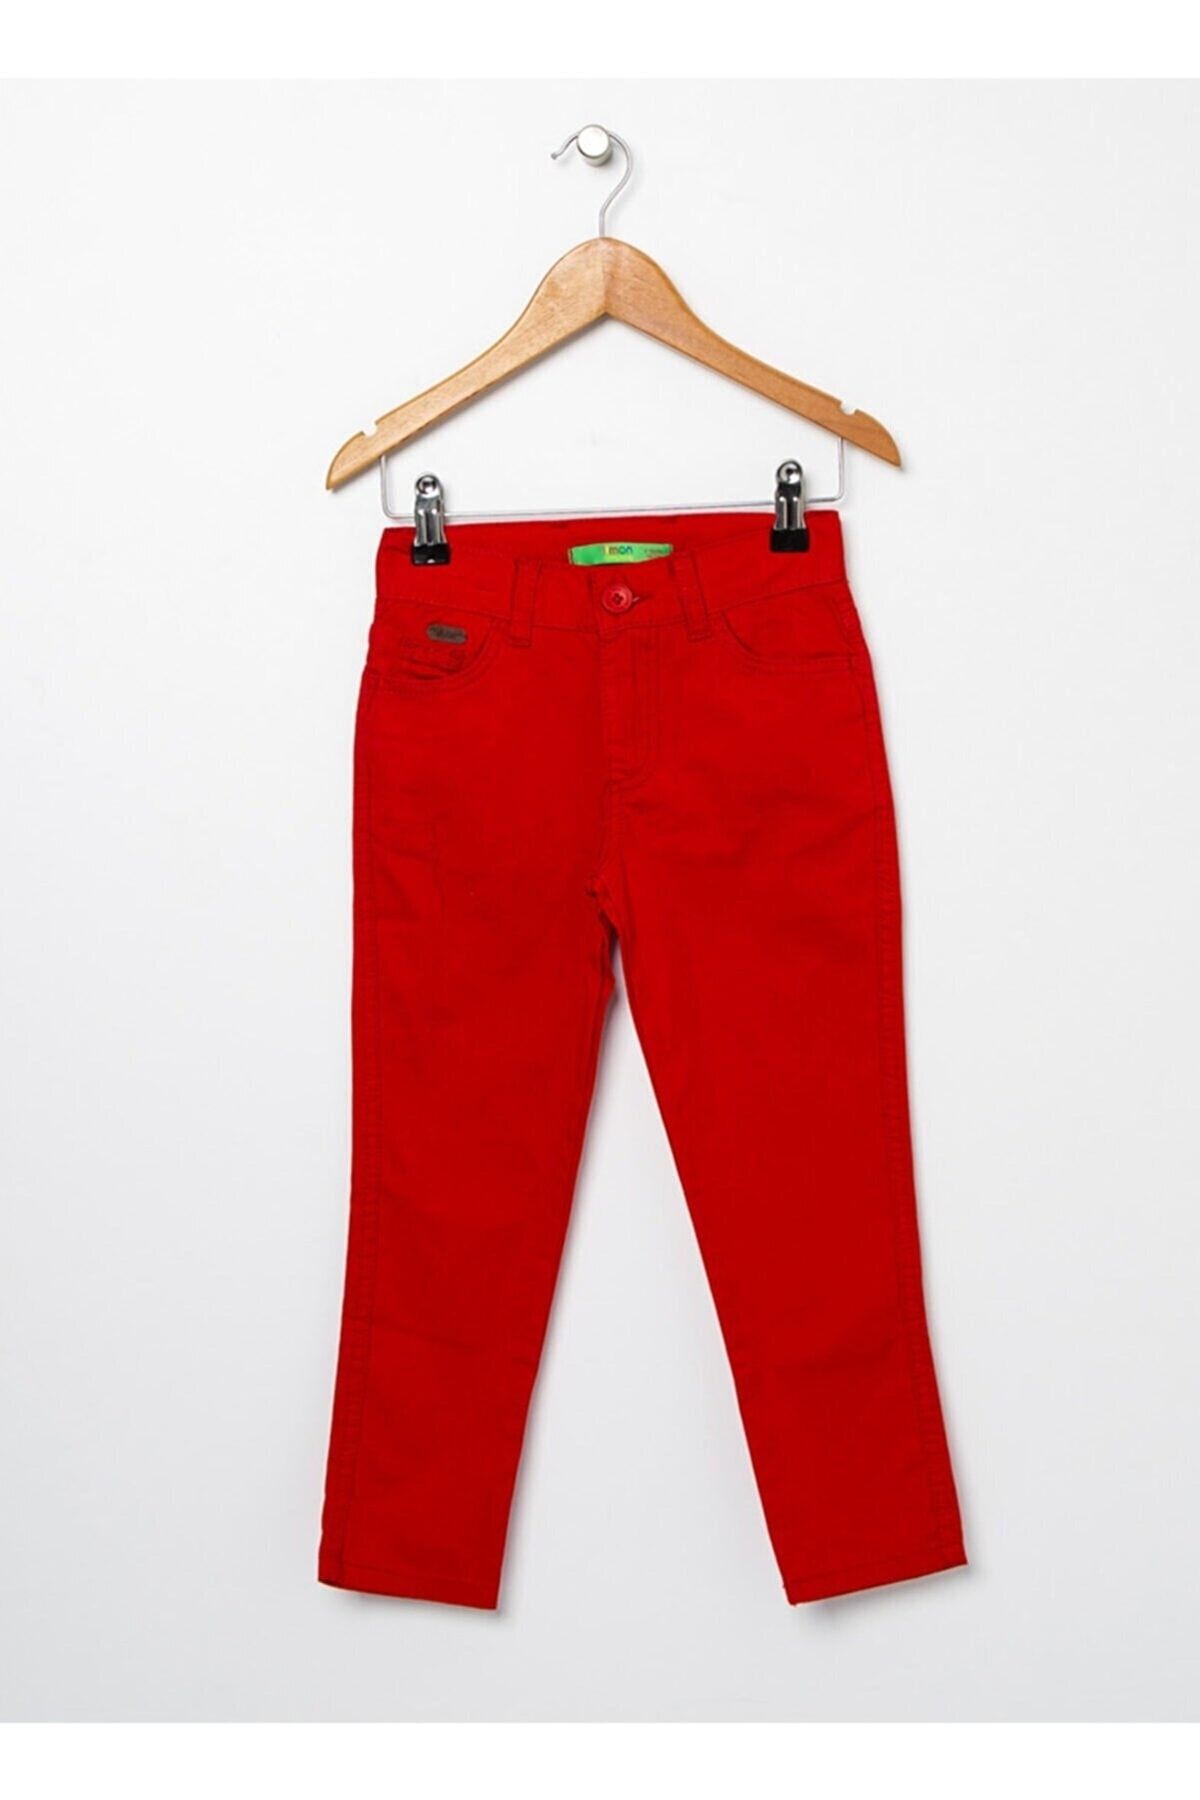 Nacar Erkek Çocuk Kırmızı Pantolon 23 Nisan